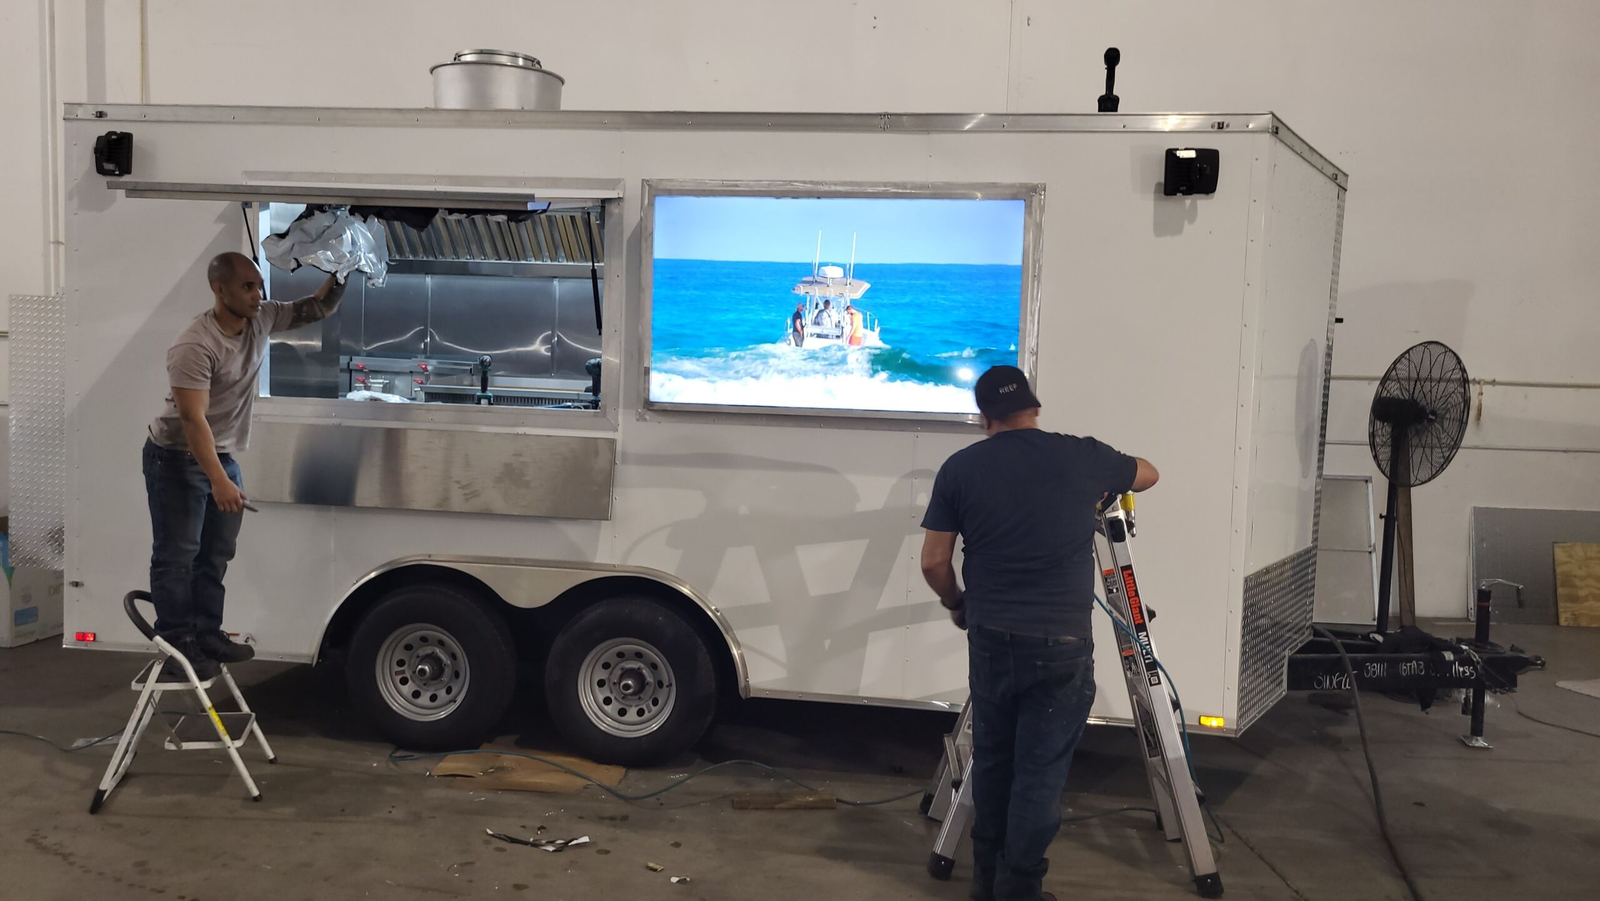 ¿Deseas comprar un food truck en Miami?